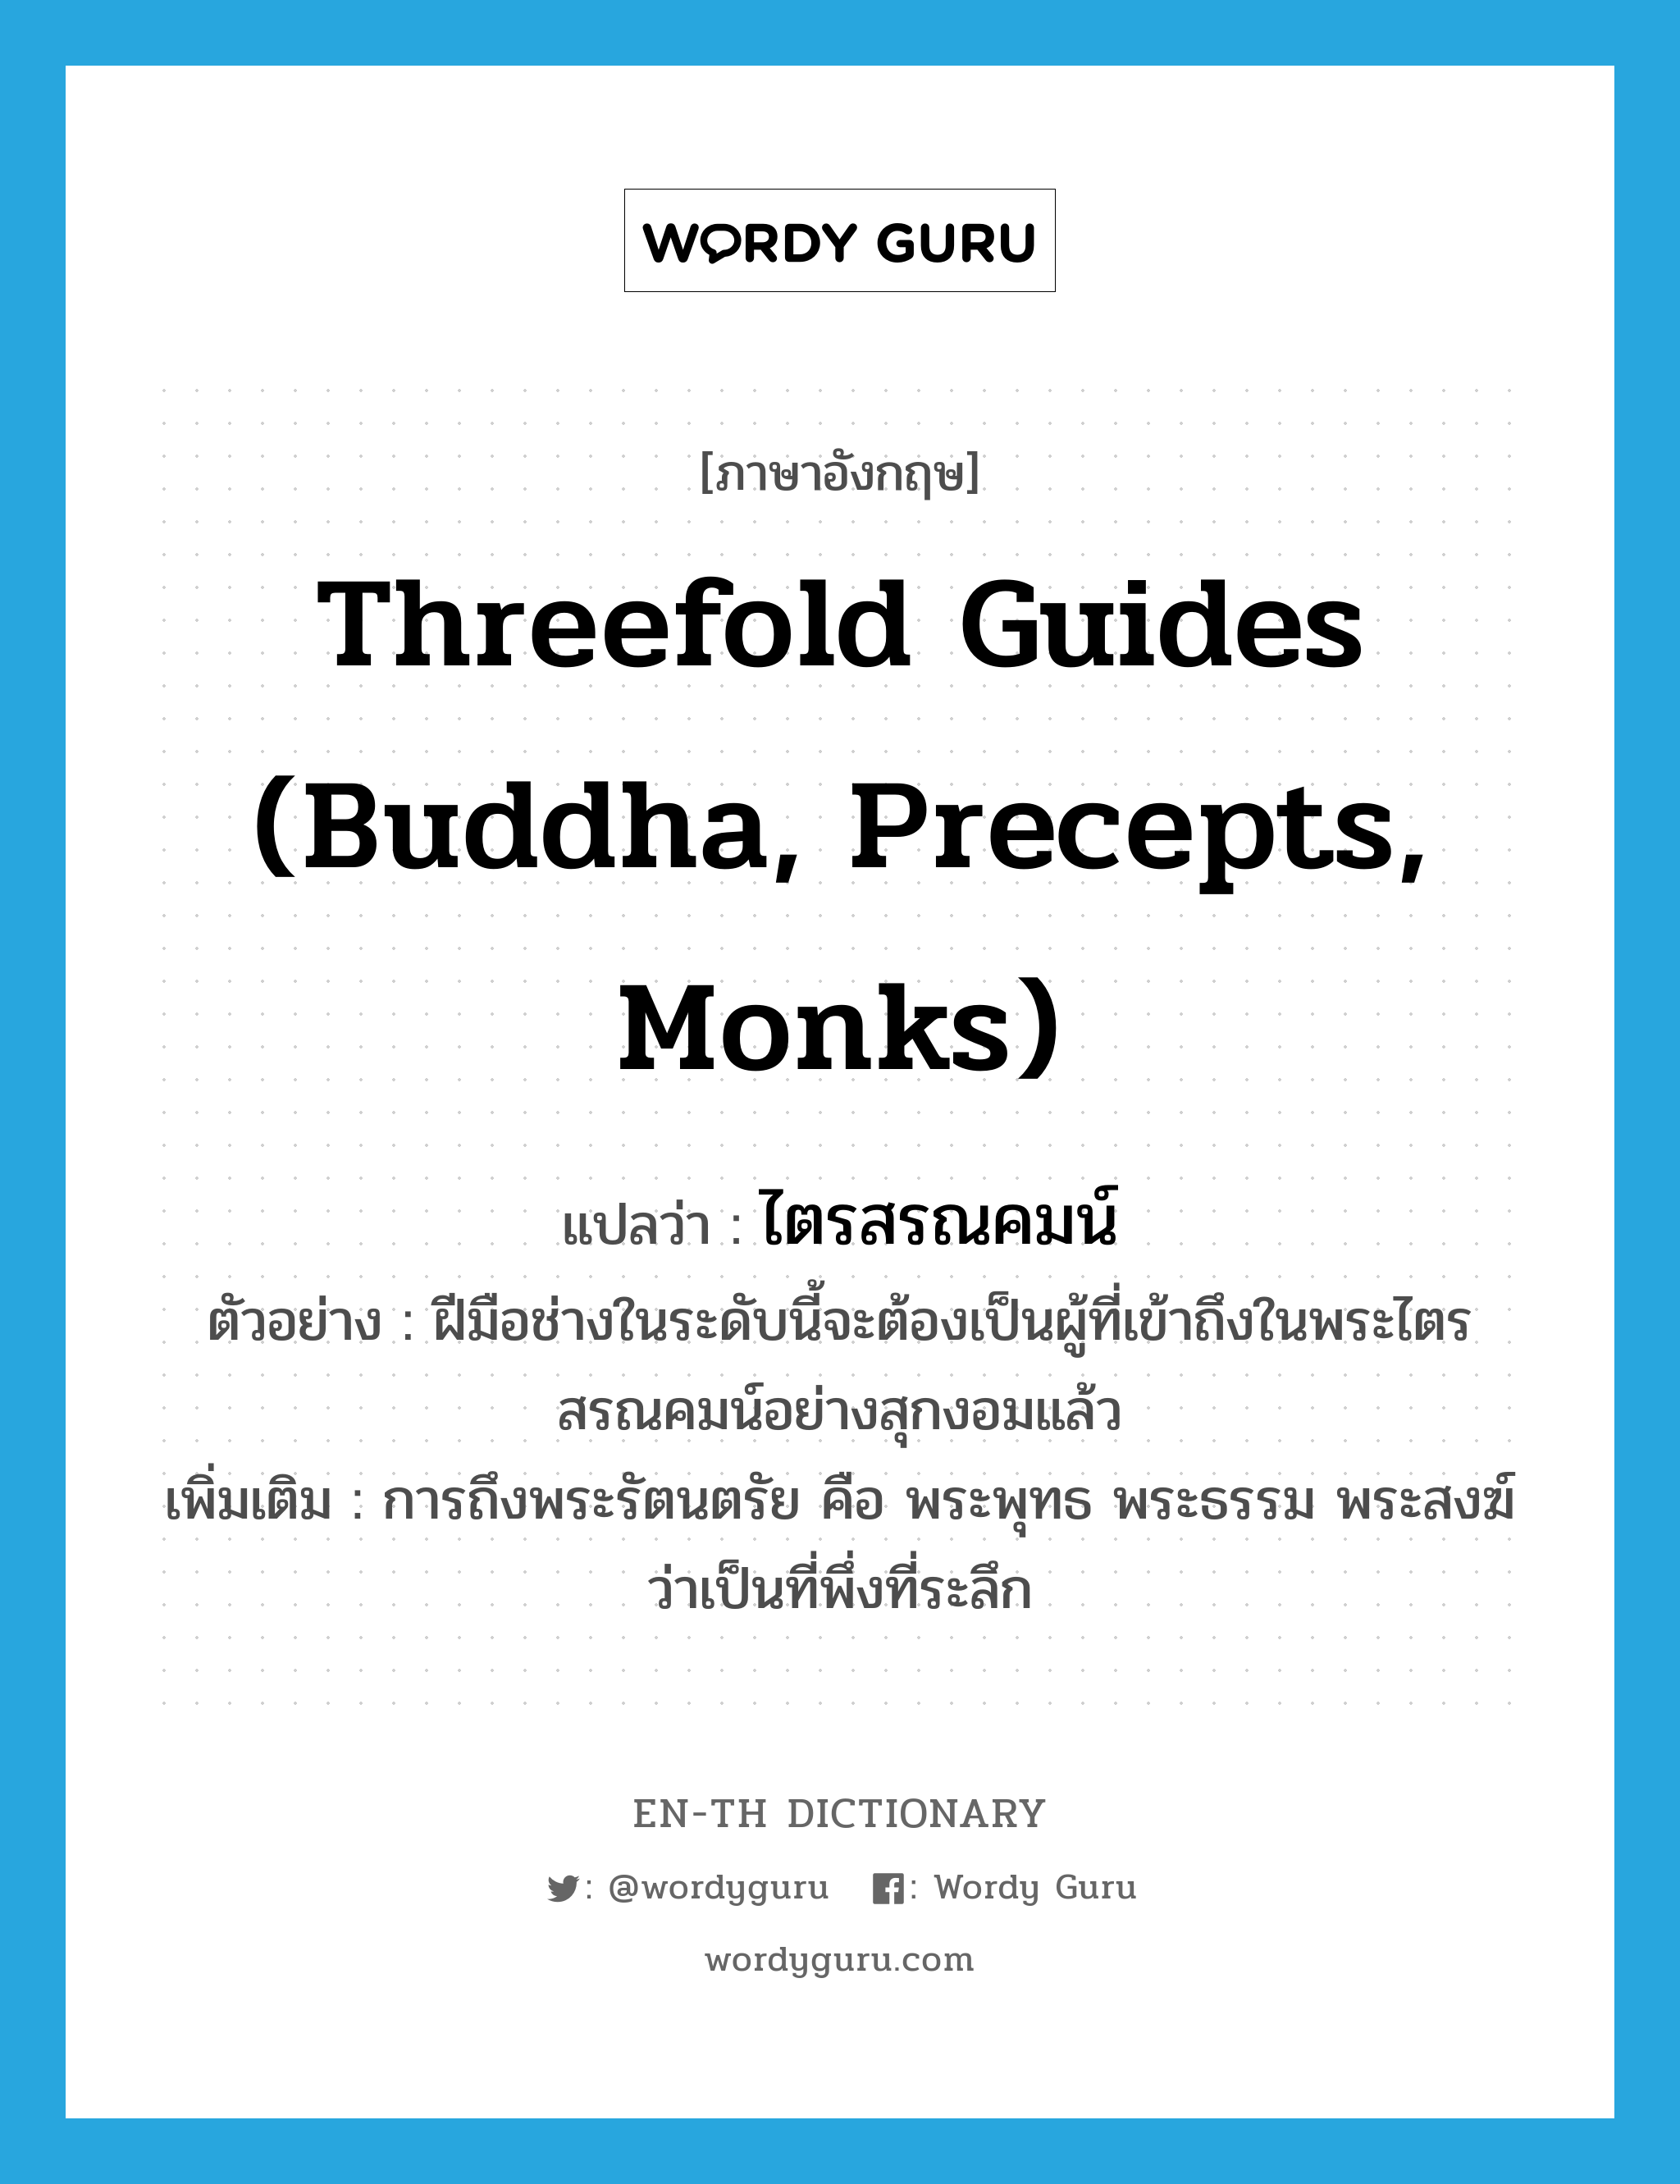 ไตรสรณคมน์ ภาษาอังกฤษ?, คำศัพท์ภาษาอังกฤษ ไตรสรณคมน์ แปลว่า Threefold Guides (Buddha, Precepts, Monks) ประเภท N ตัวอย่าง ฝีมือช่างในระดับนี้จะต้องเป็นผู้ที่เข้าถึงในพระไตรสรณคมน์อย่างสุกงอมแล้ว เพิ่มเติม การถึงพระรัตนตรัย คือ พระพุทธ พระธรรม พระสงฆ์ ว่าเป็นที่พึ่งที่ระลึก หมวด N